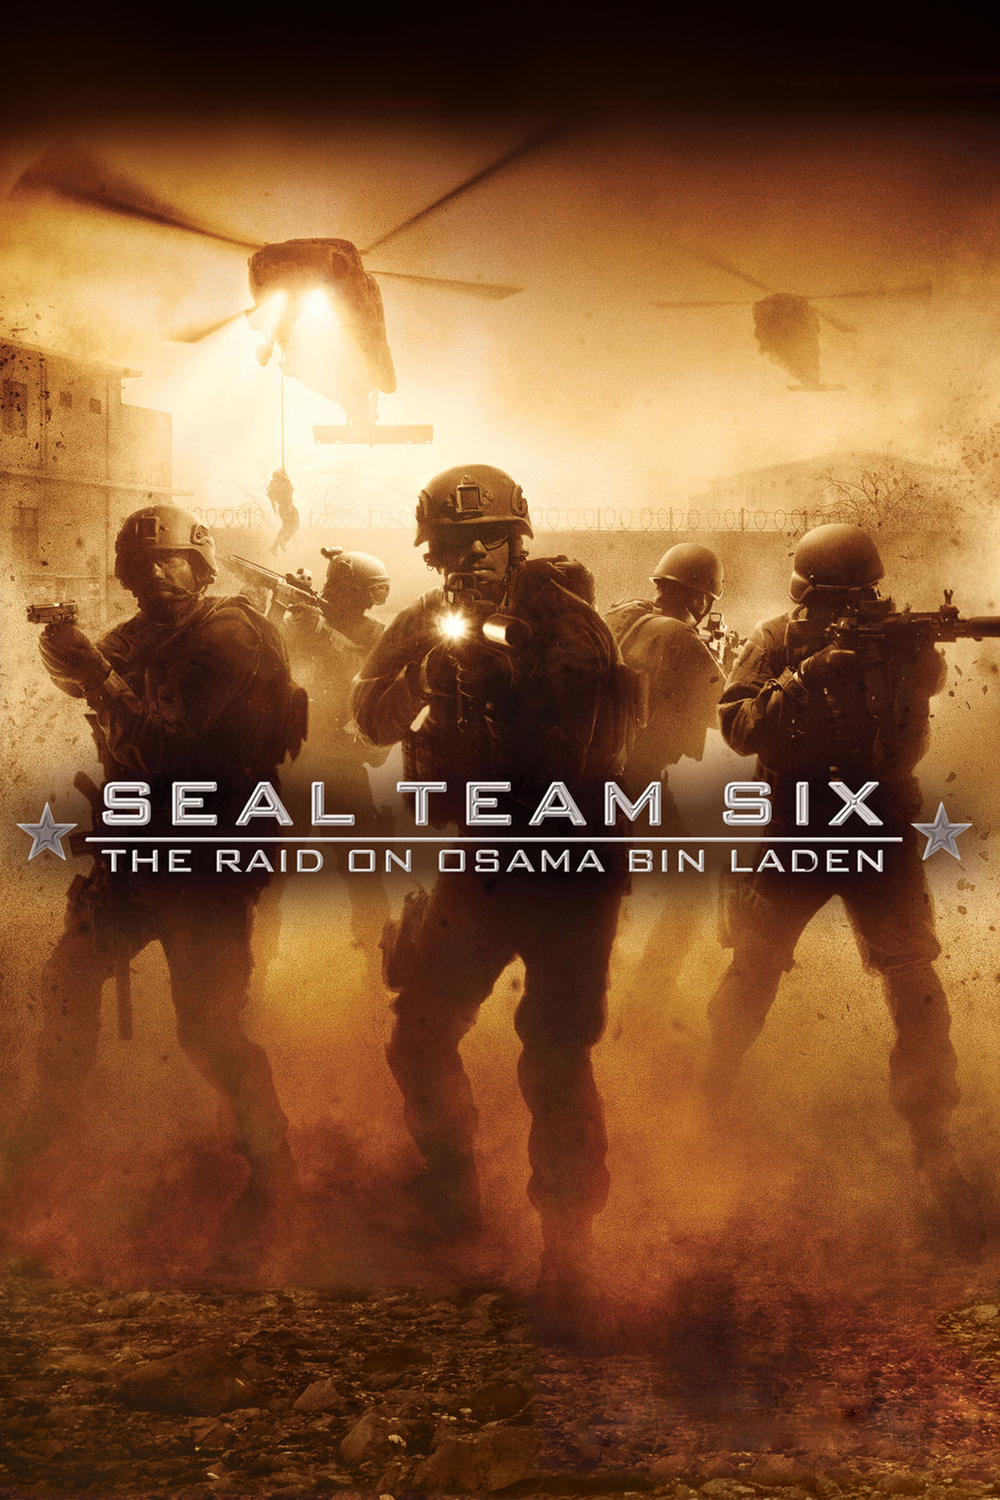 Seal Team 6: Dopadení Usámy bin Ládina | Fandíme filmu